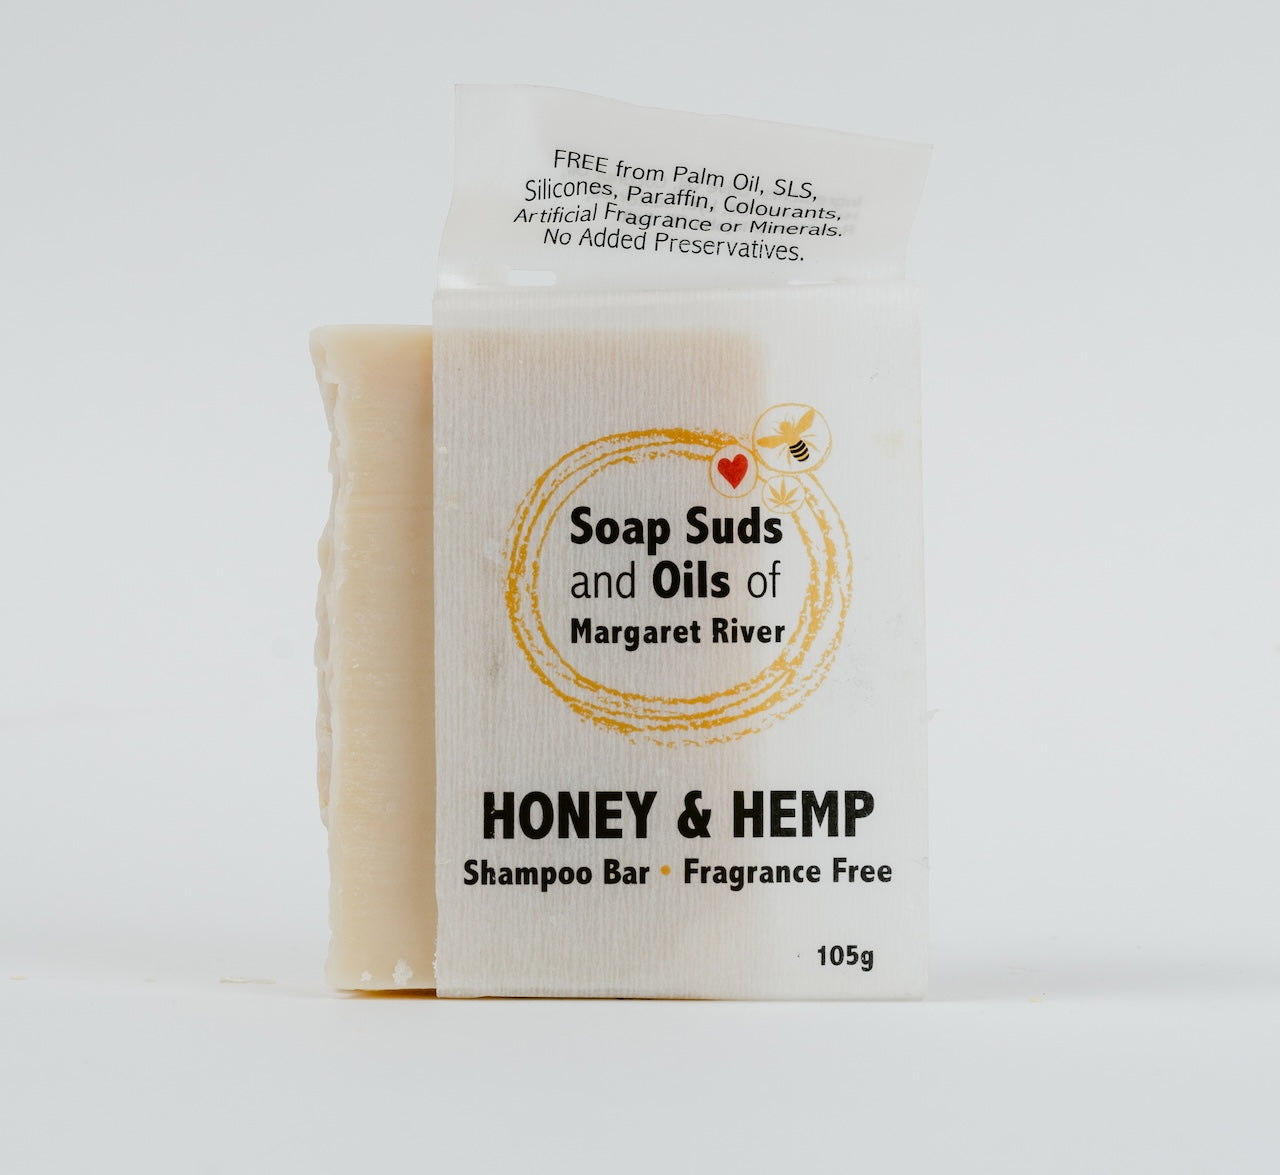 Honey & Hemp Shampoo Bar - Fragrance Free